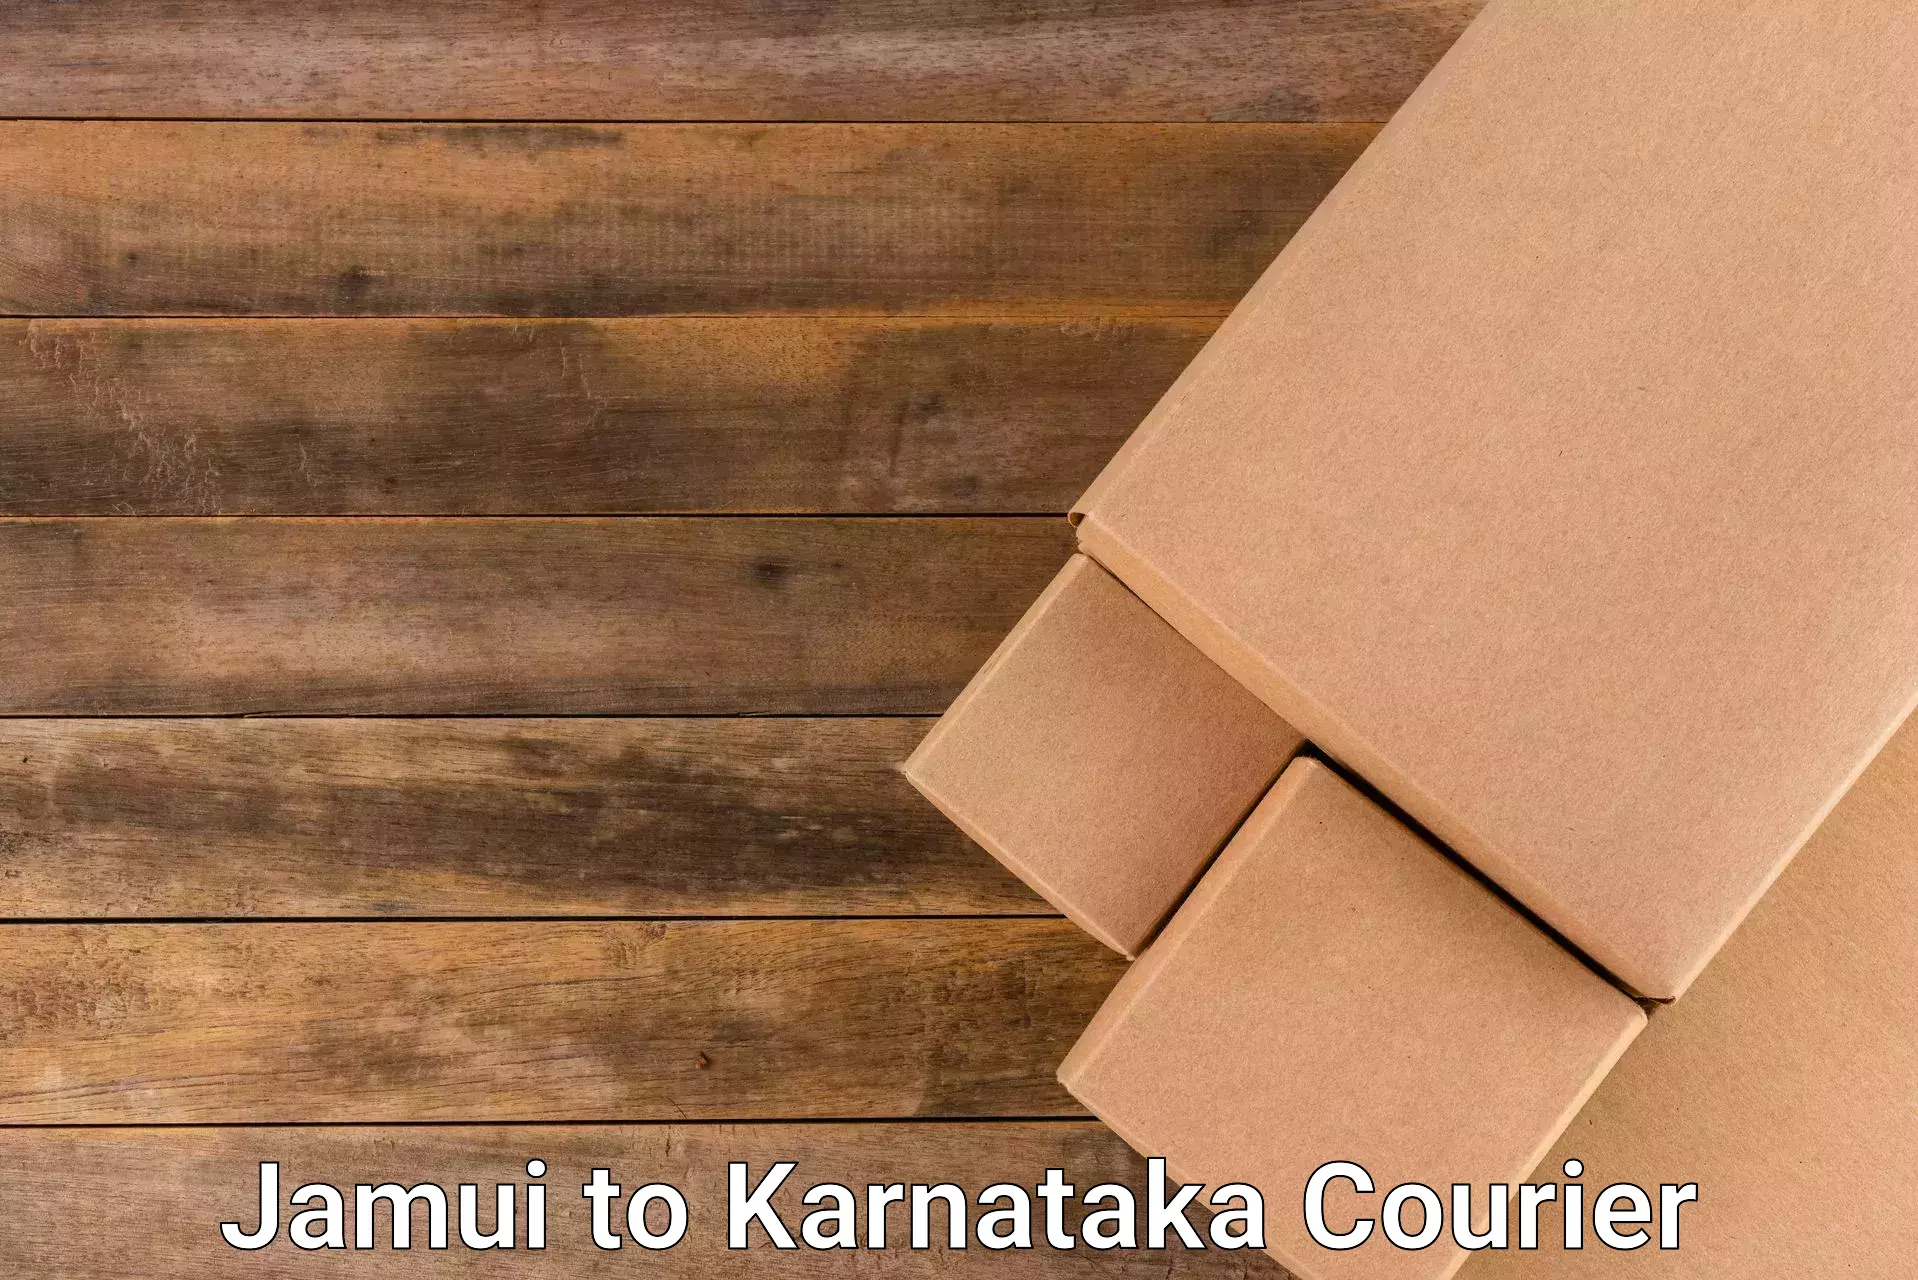 Reliable package handling Jamui to Kanjarakatte